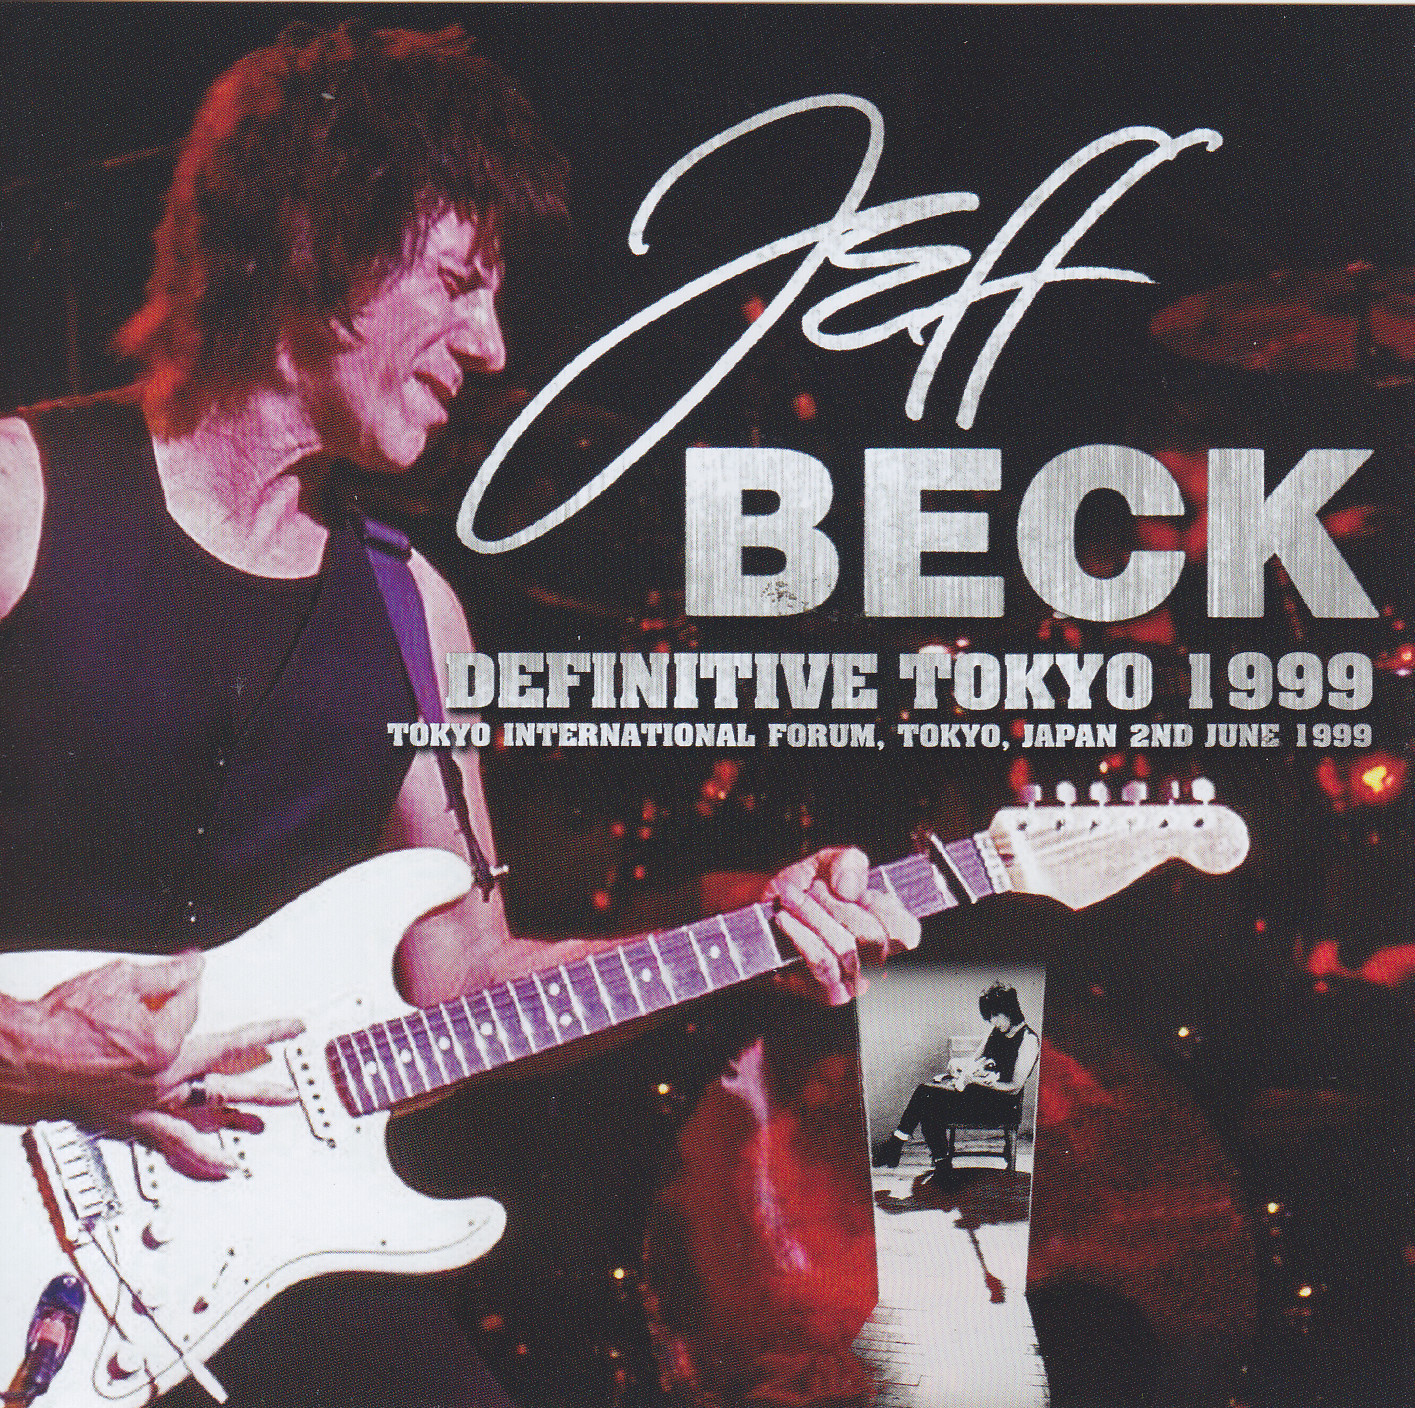 jeff beck 1999 tour band